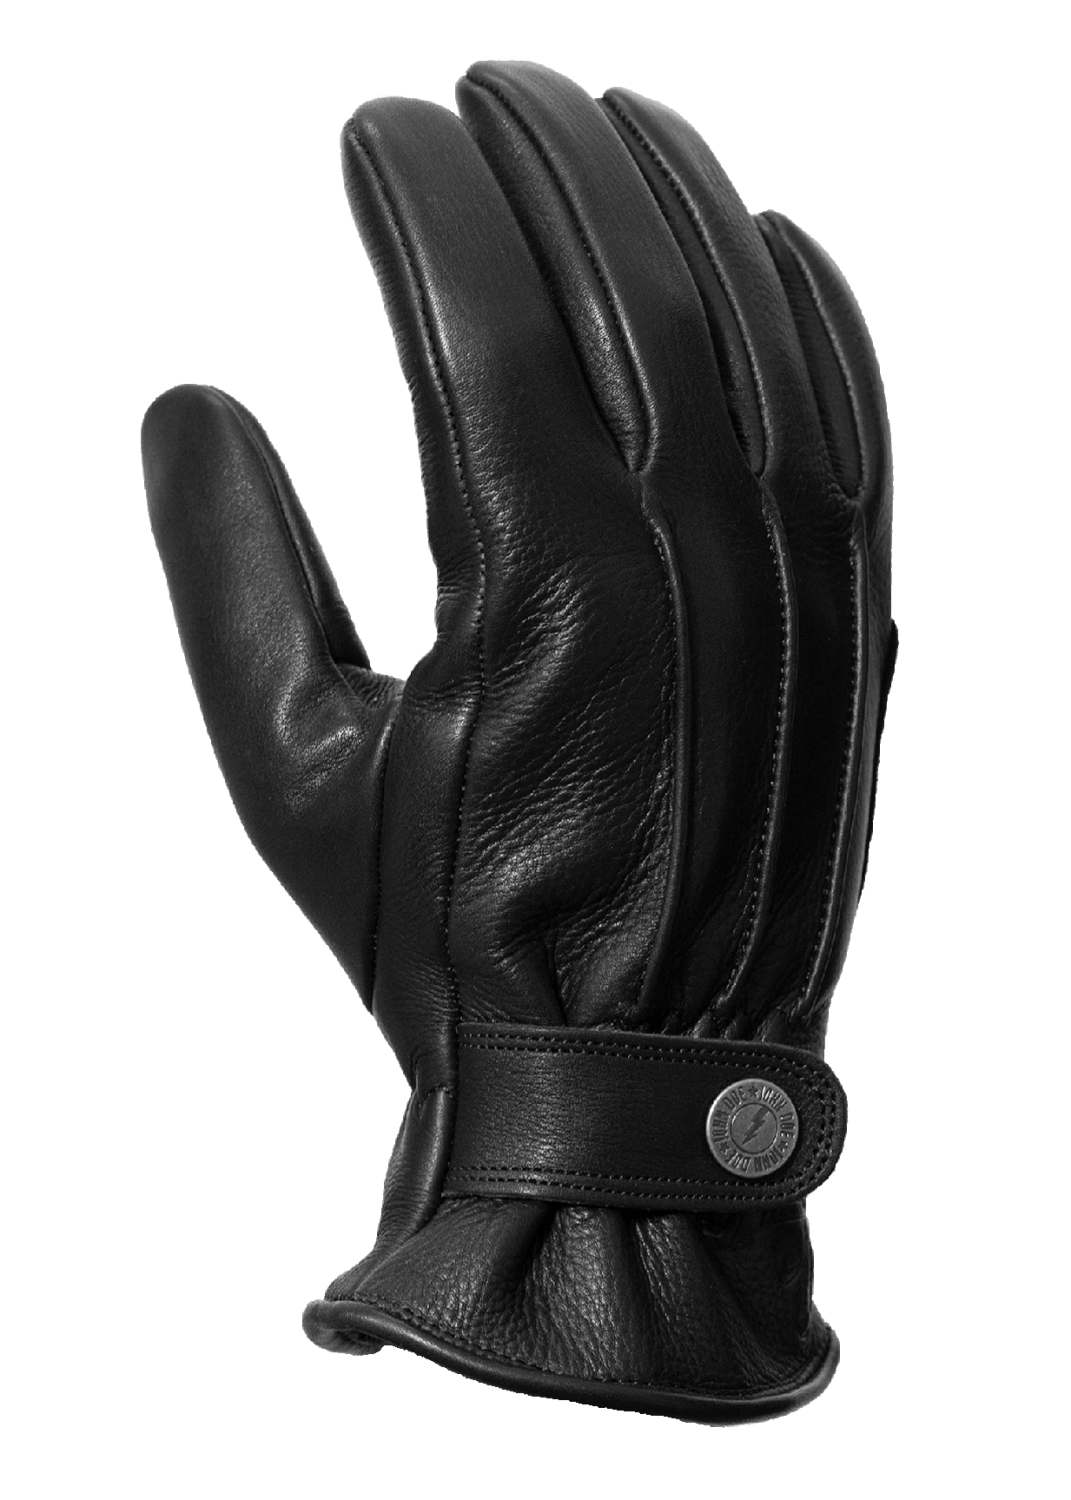 John Doe Grinder Motorcycle Gloves, Black